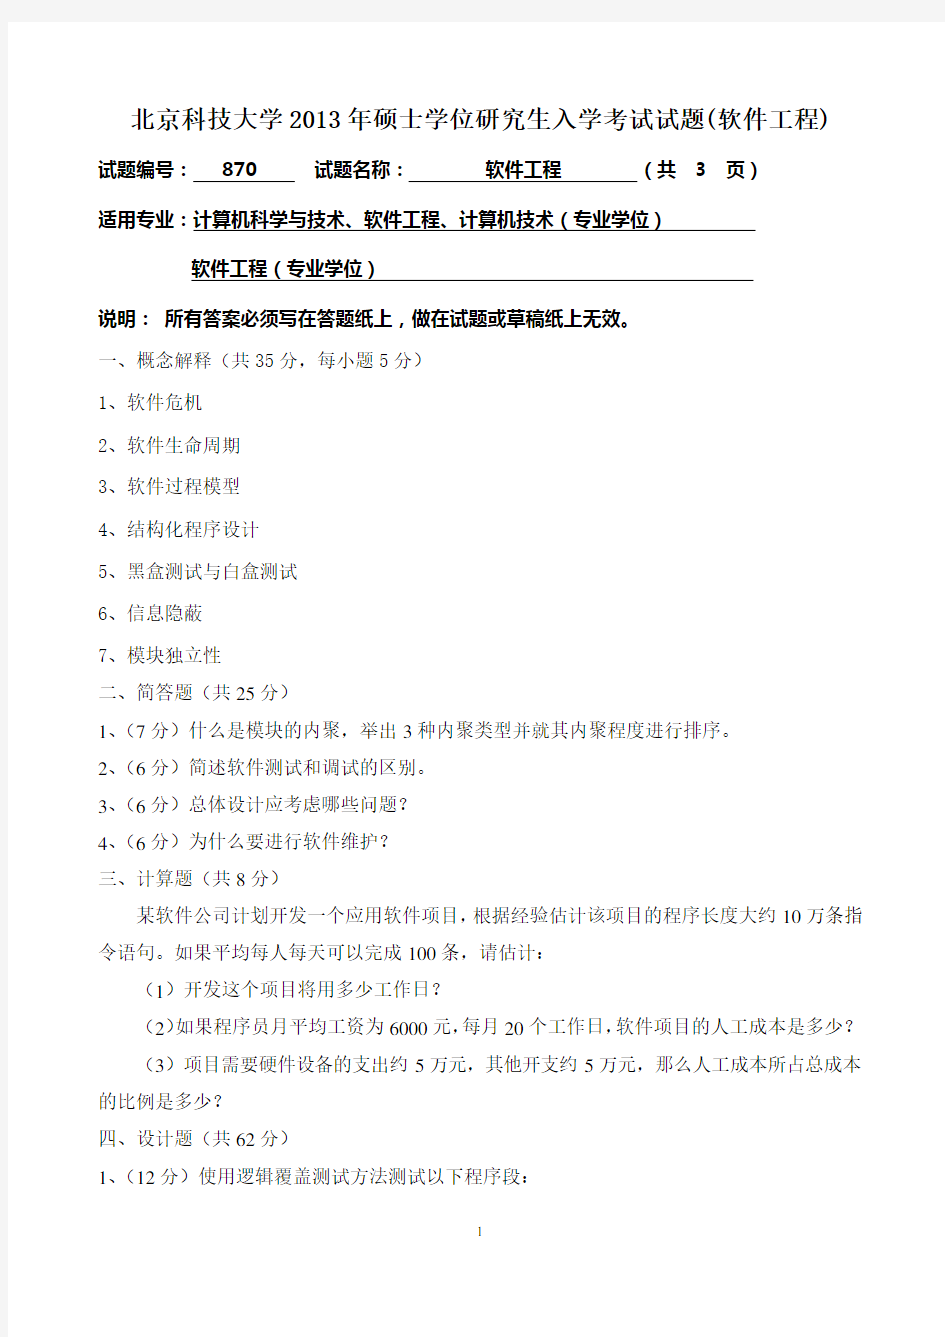 北京科技大学2013年硕士学位研究生入学考试试题(软件工程)